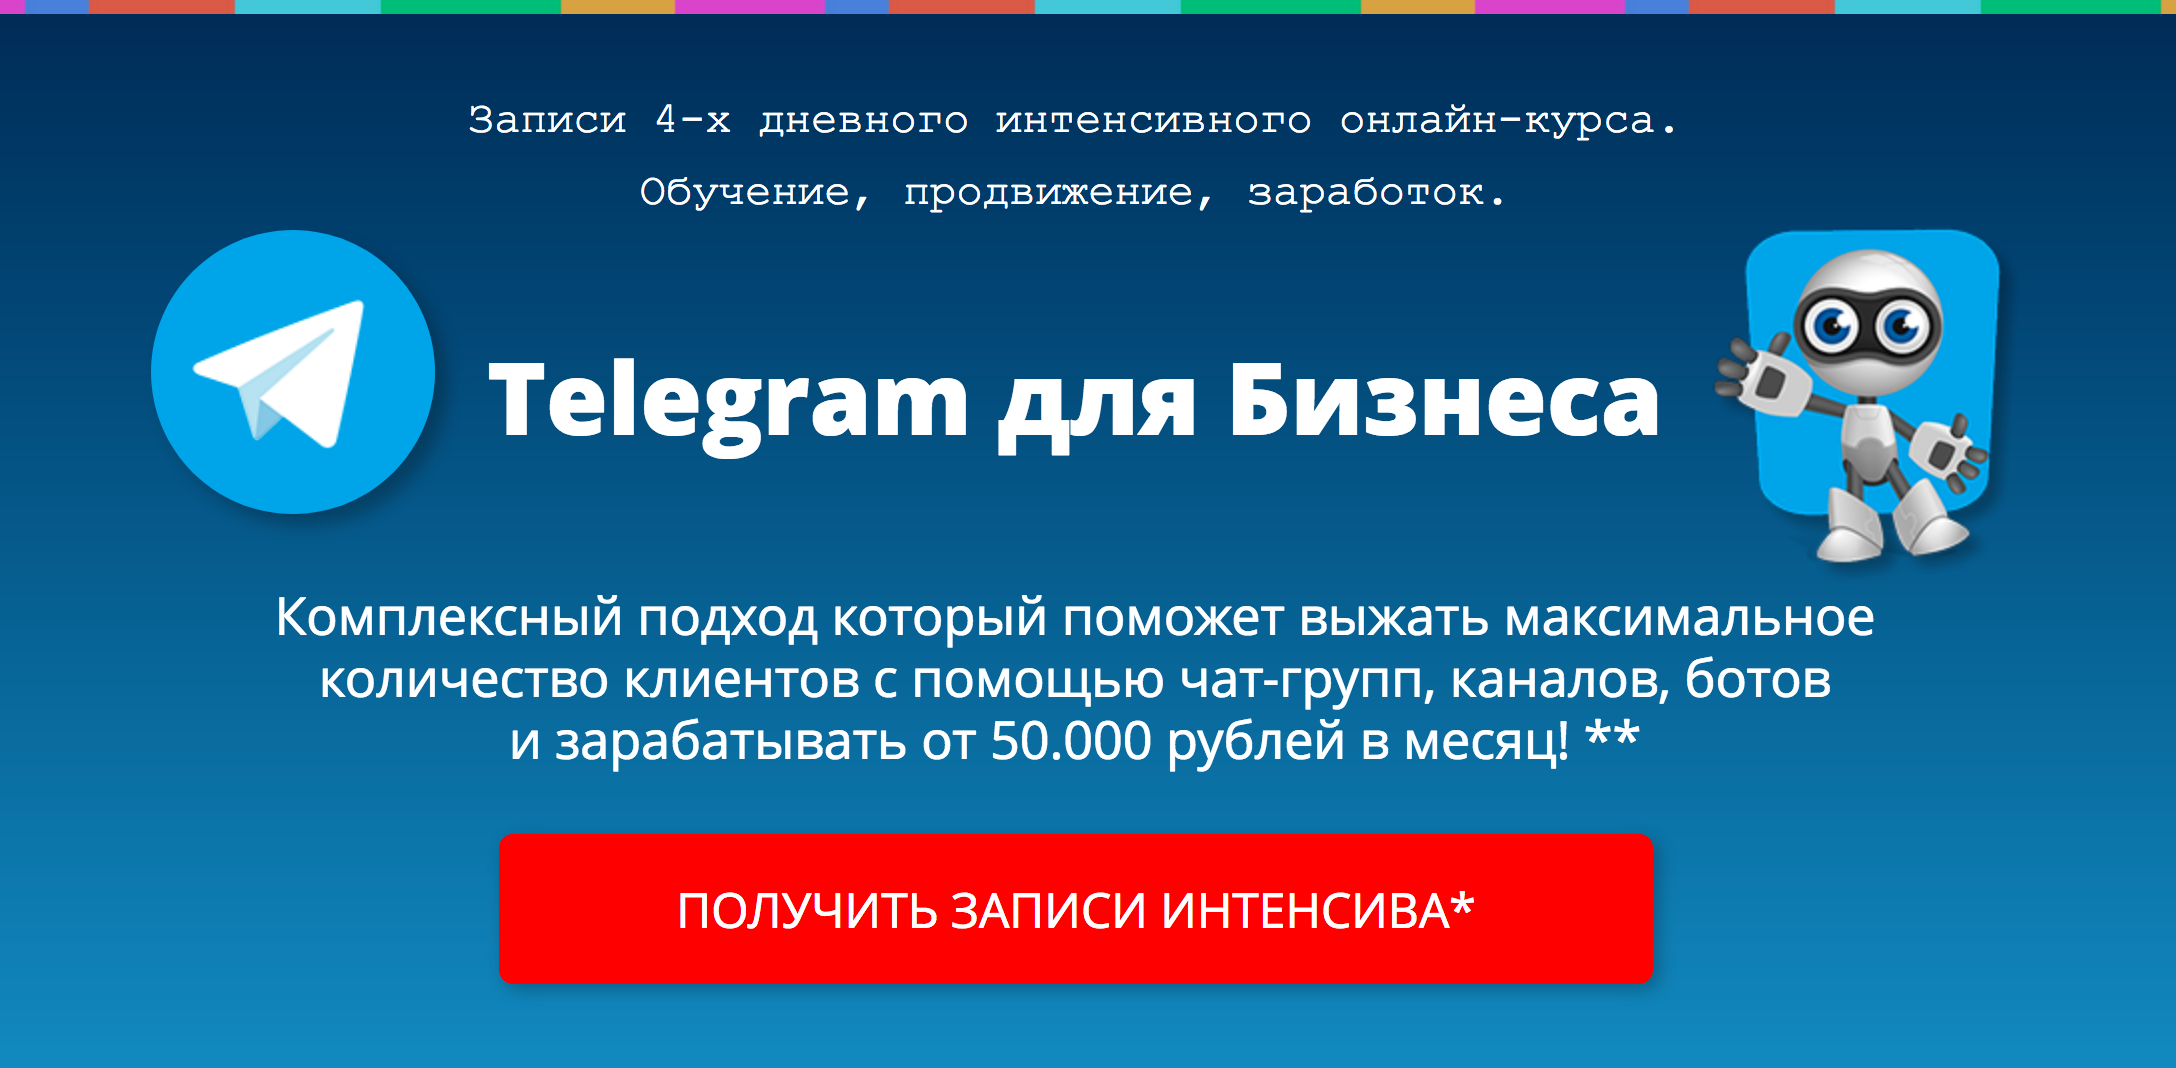 Заработок в телеграмме на русском языке фото 43